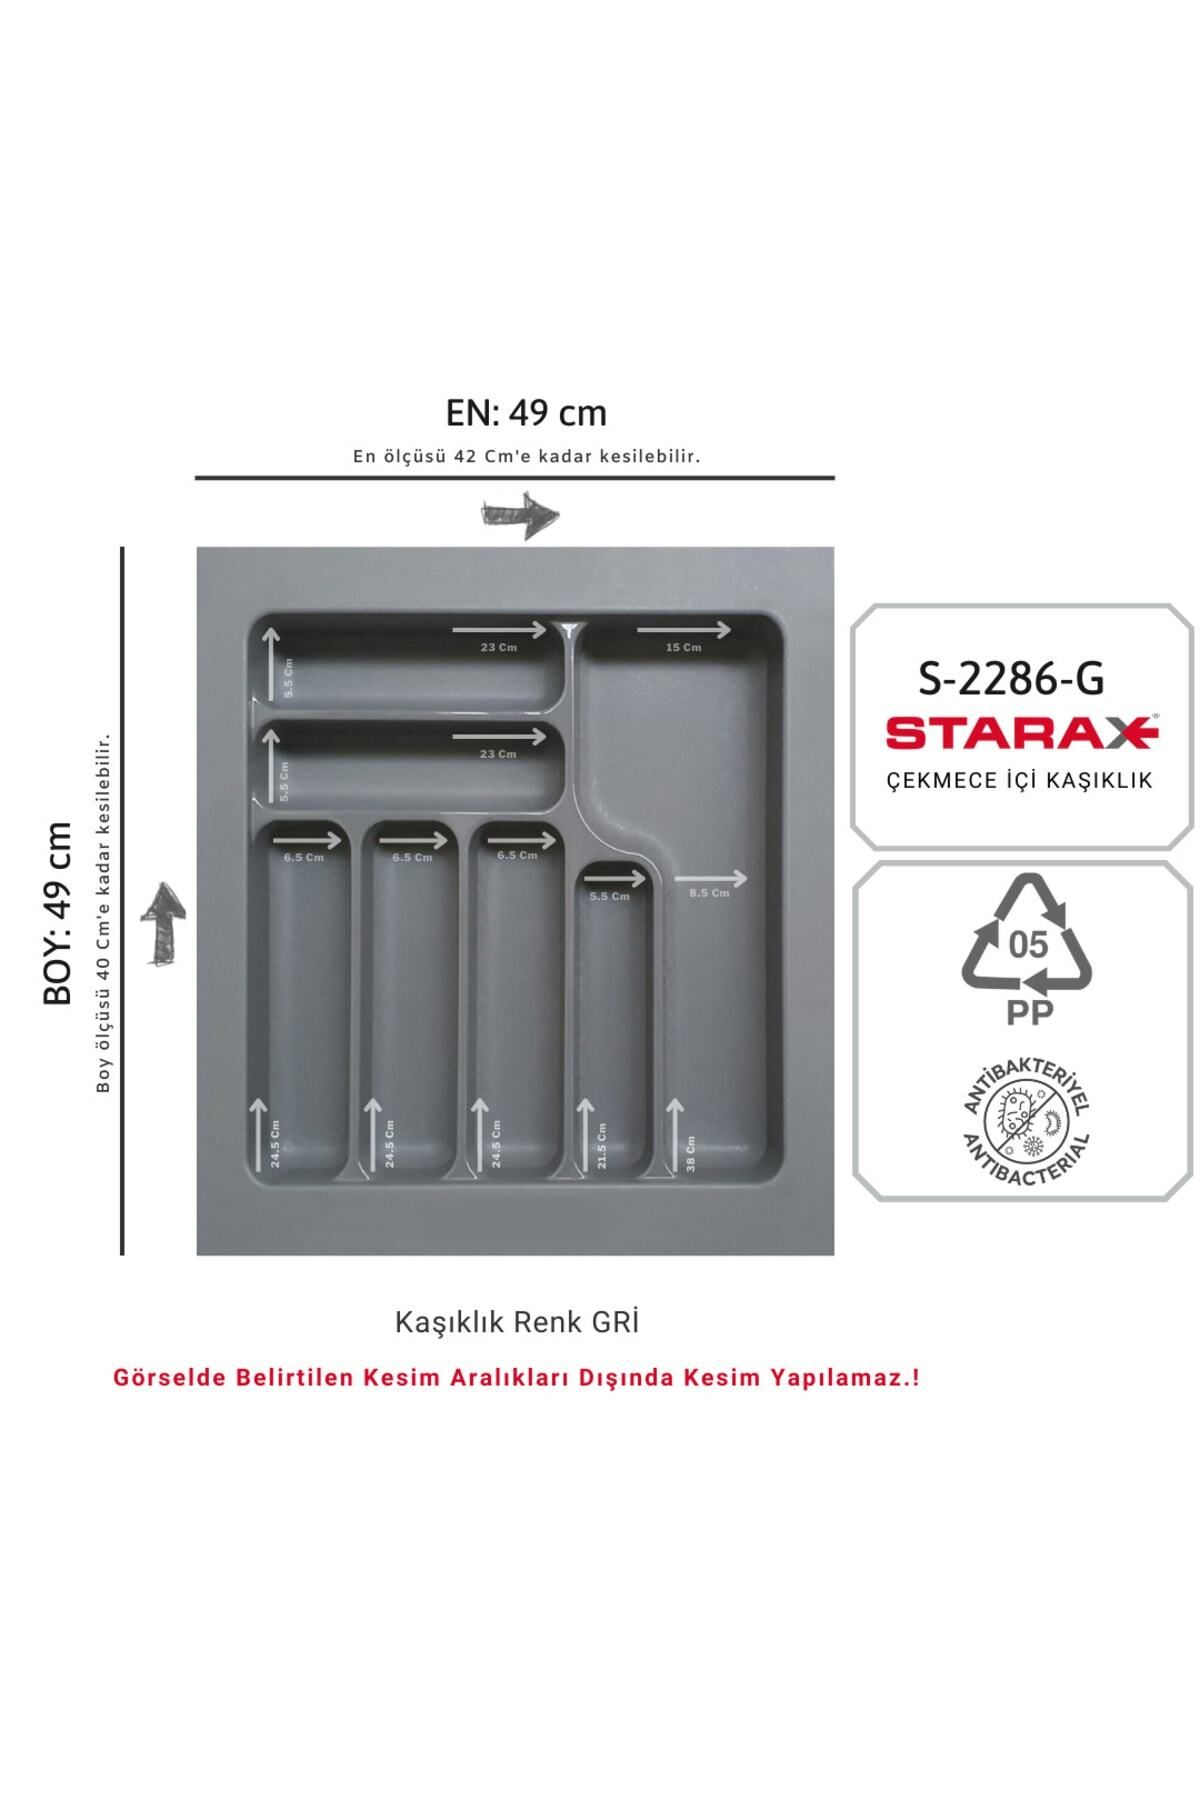 Starax S-2286-g Çekmece Içi Plastik Kaşıklık Gri En:49-42 D:49-40 Cm Arası Kesilir 7 Göz